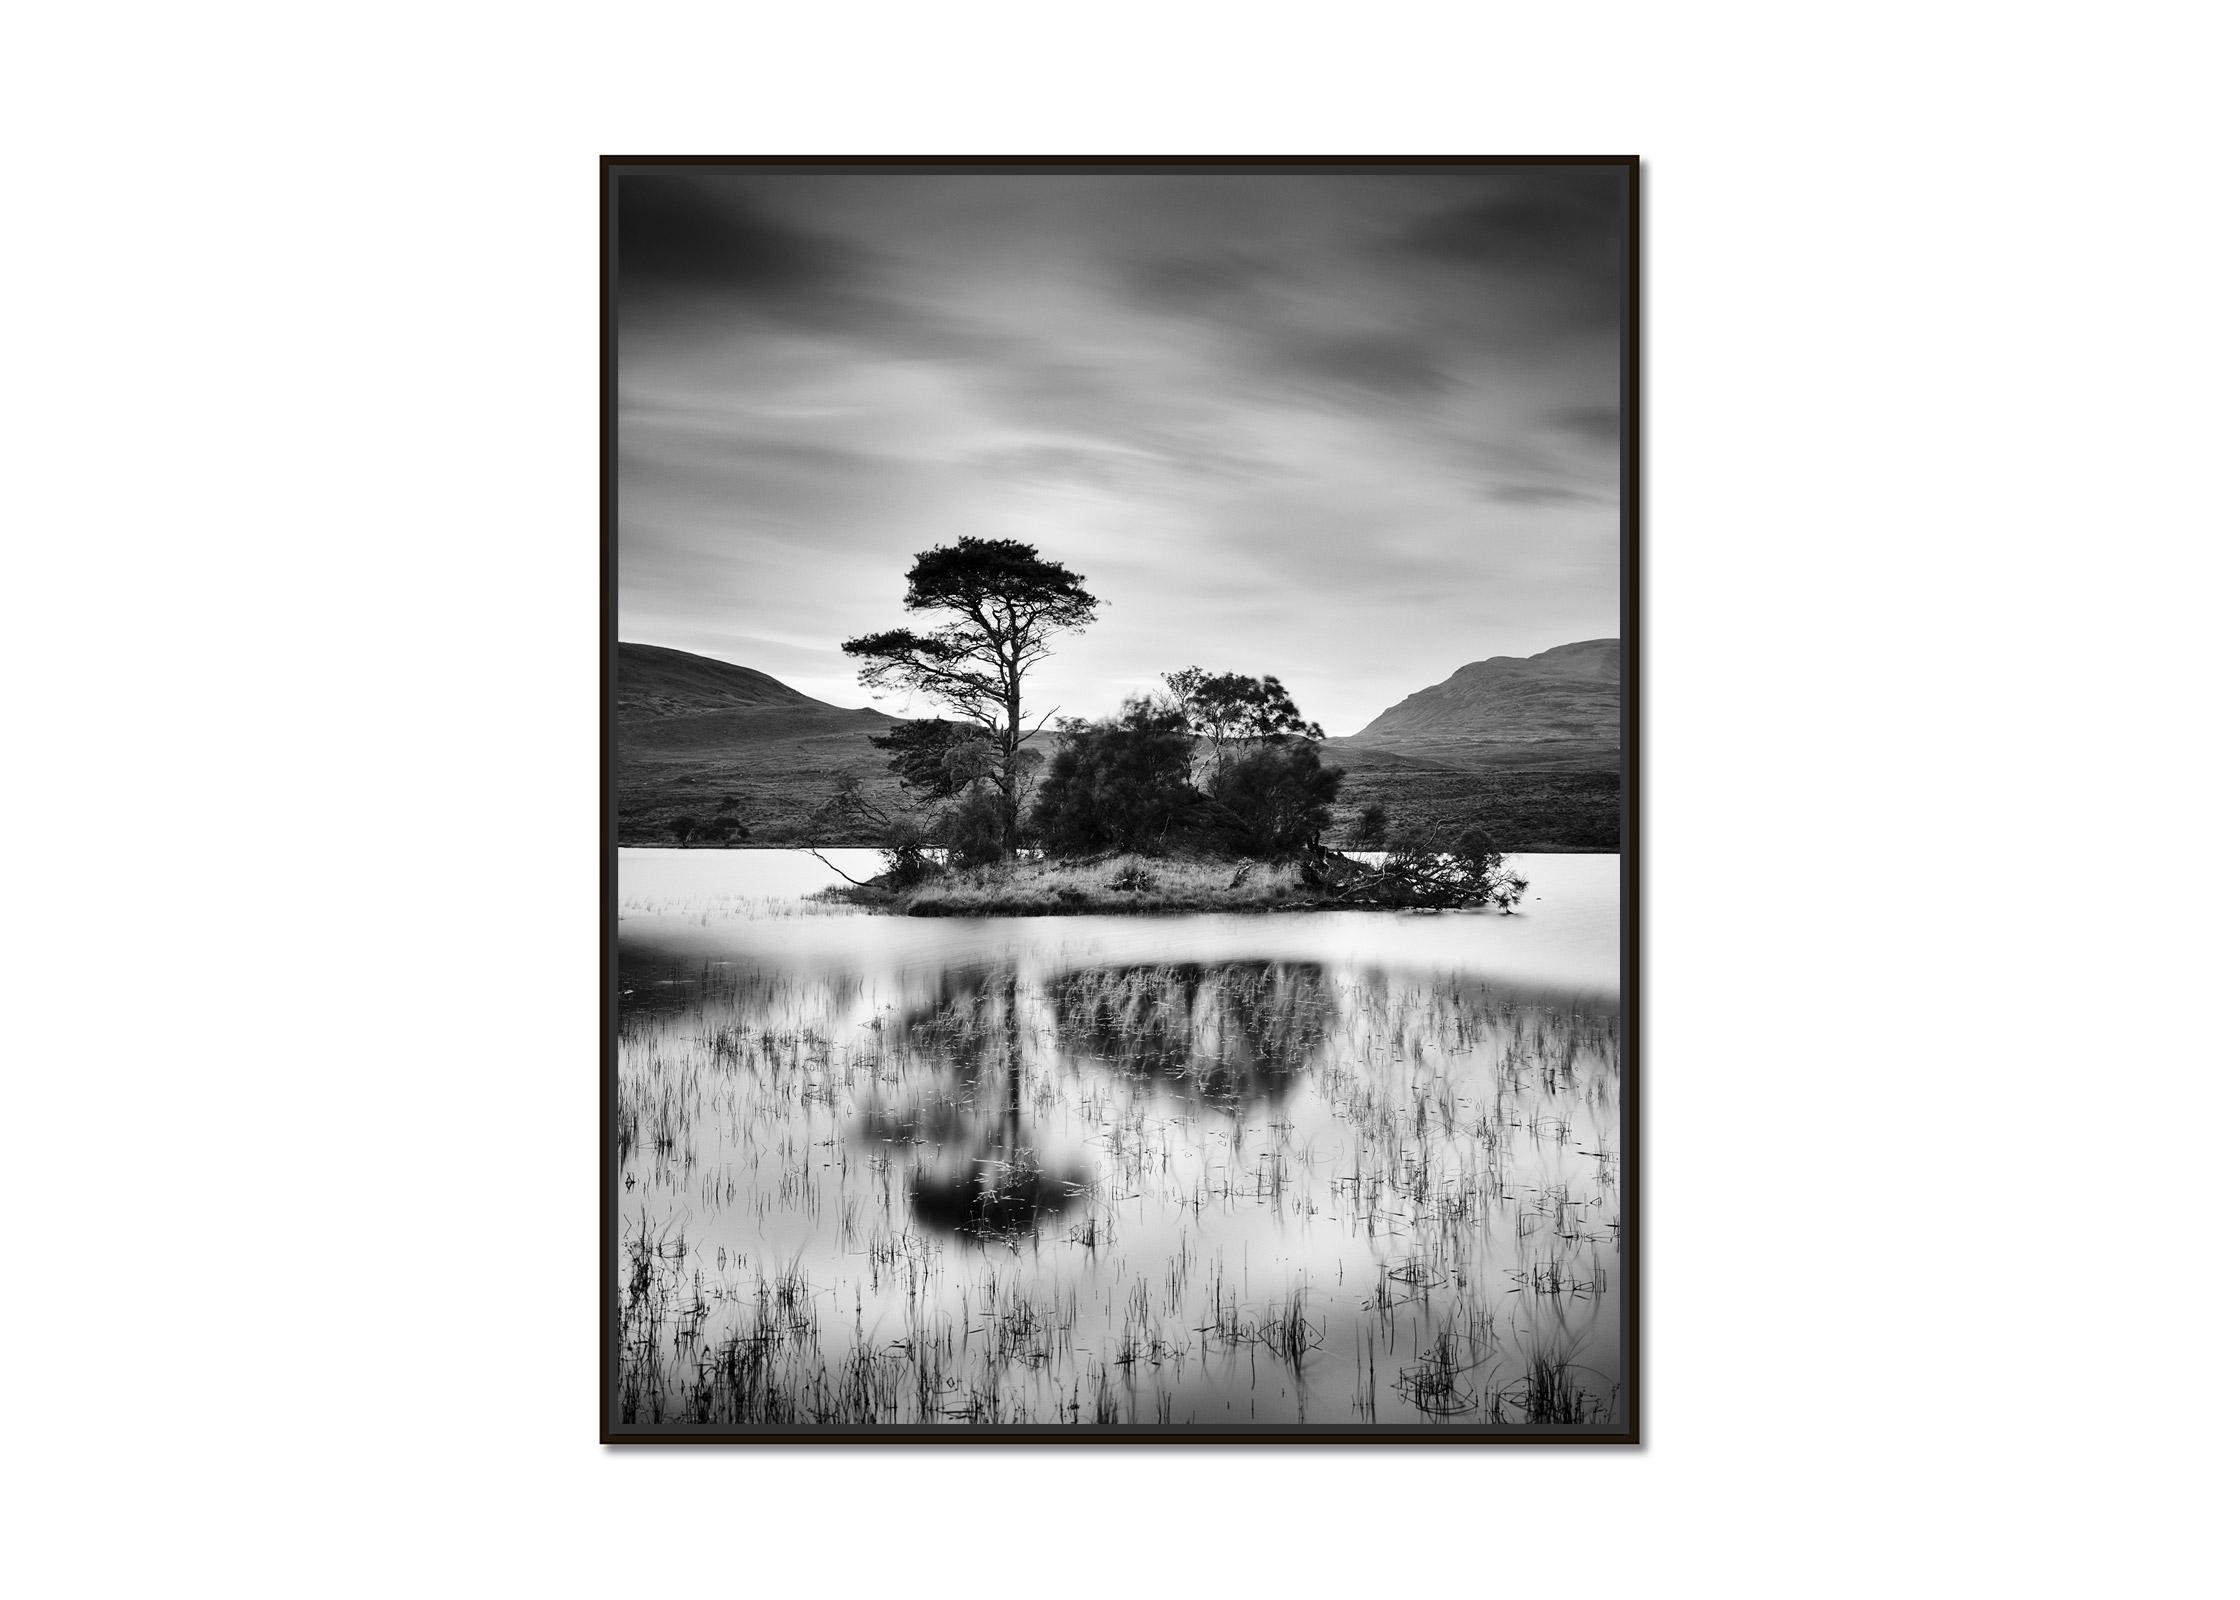 Nach dem Sonnenuntergang, Baum, Insel, Schottland, Schwarz-Weiß-Landschaftsfotografie – Photograph von Gerald Berghammer